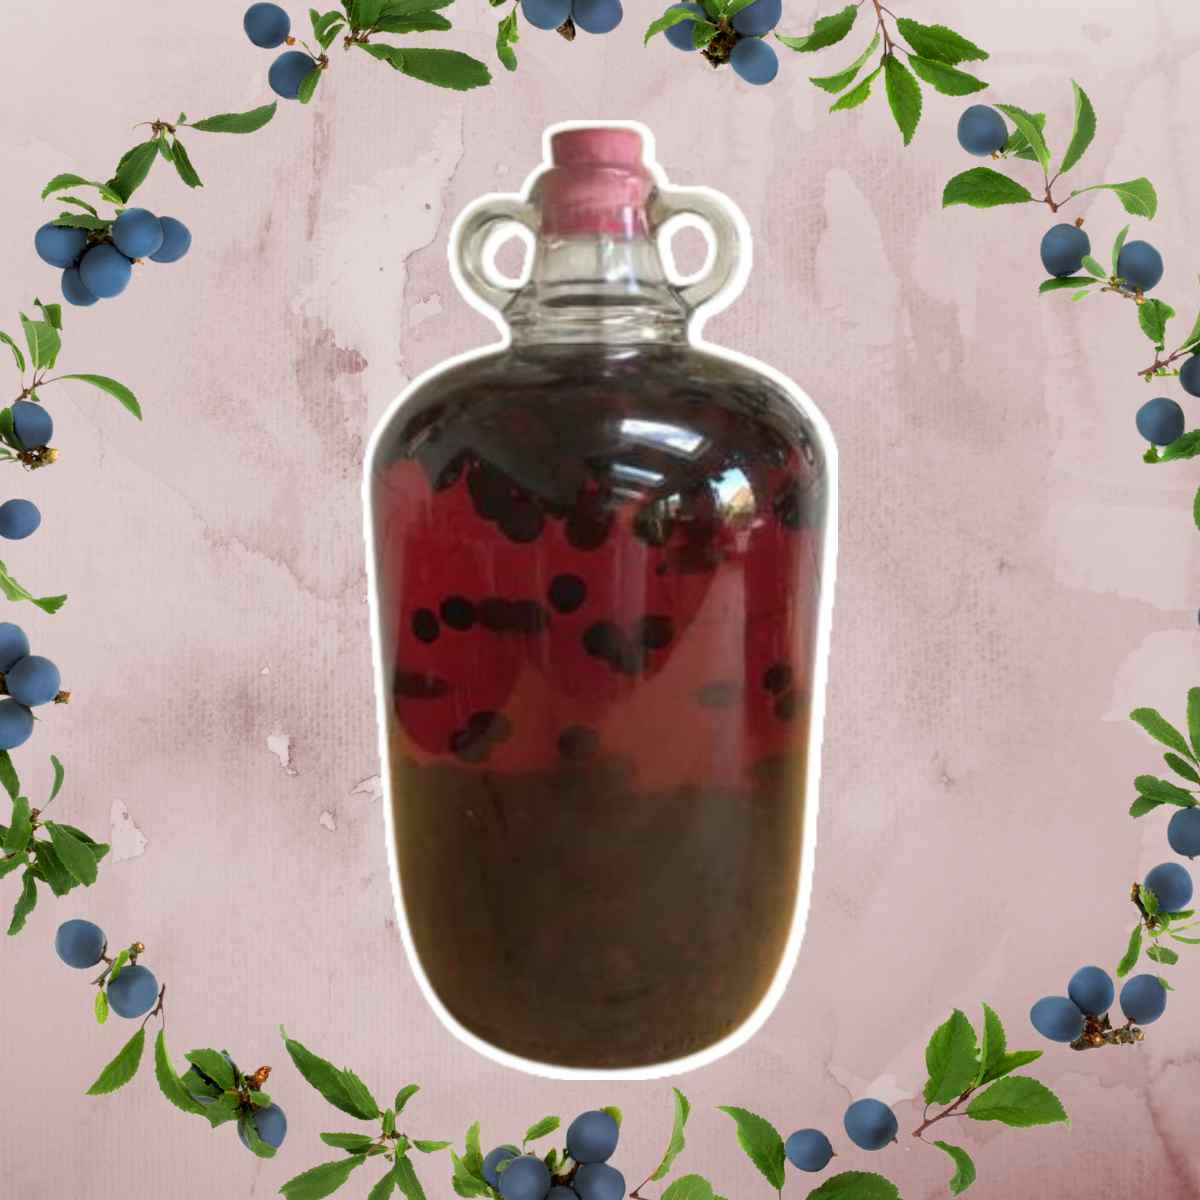 Sloe Gin in jar garnished with sloe berries